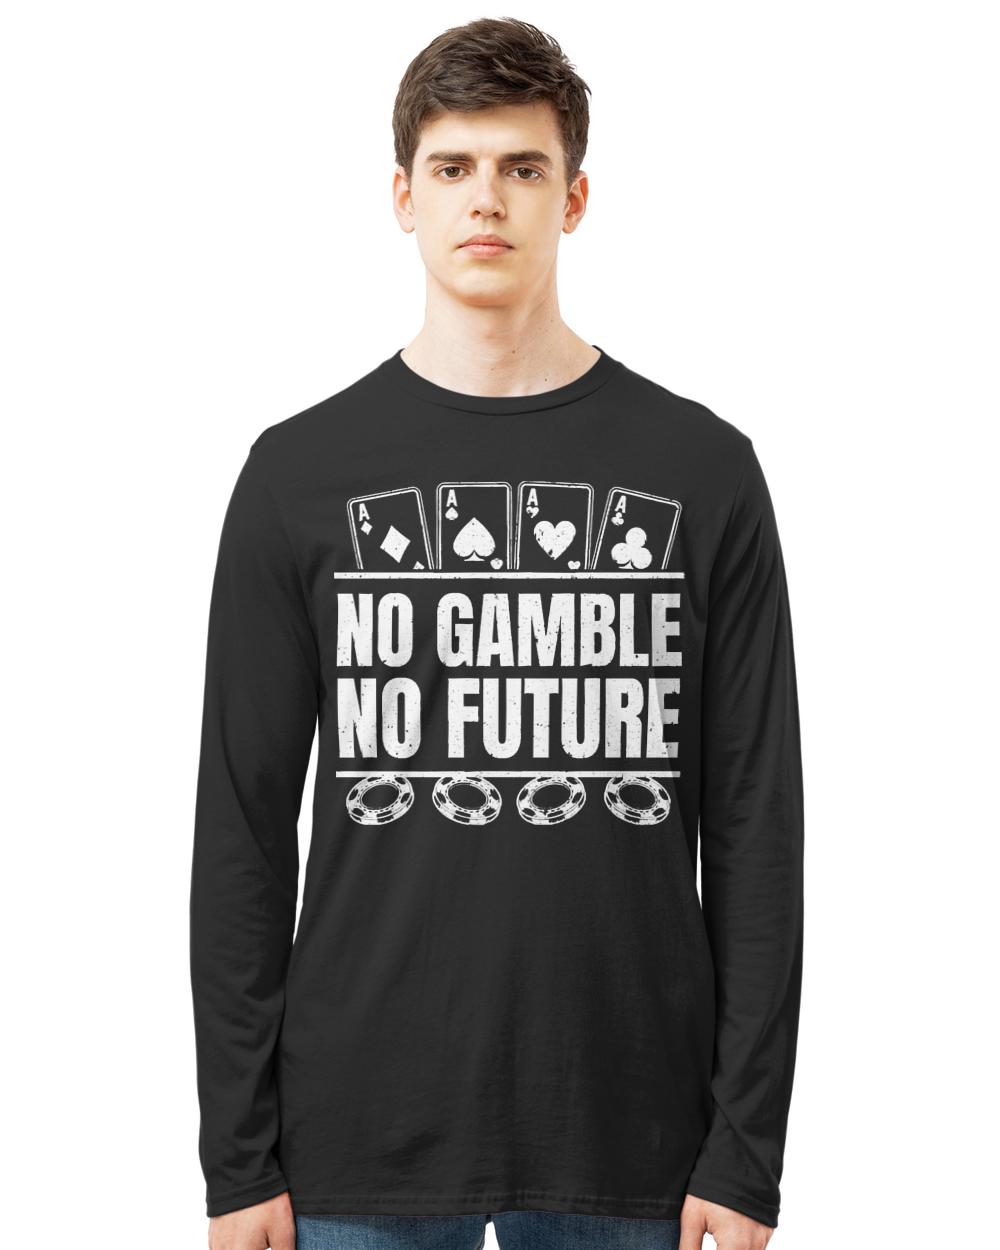 Poker T- Shirt Poker Cards Aces - No Gamble No Future T- Shirt